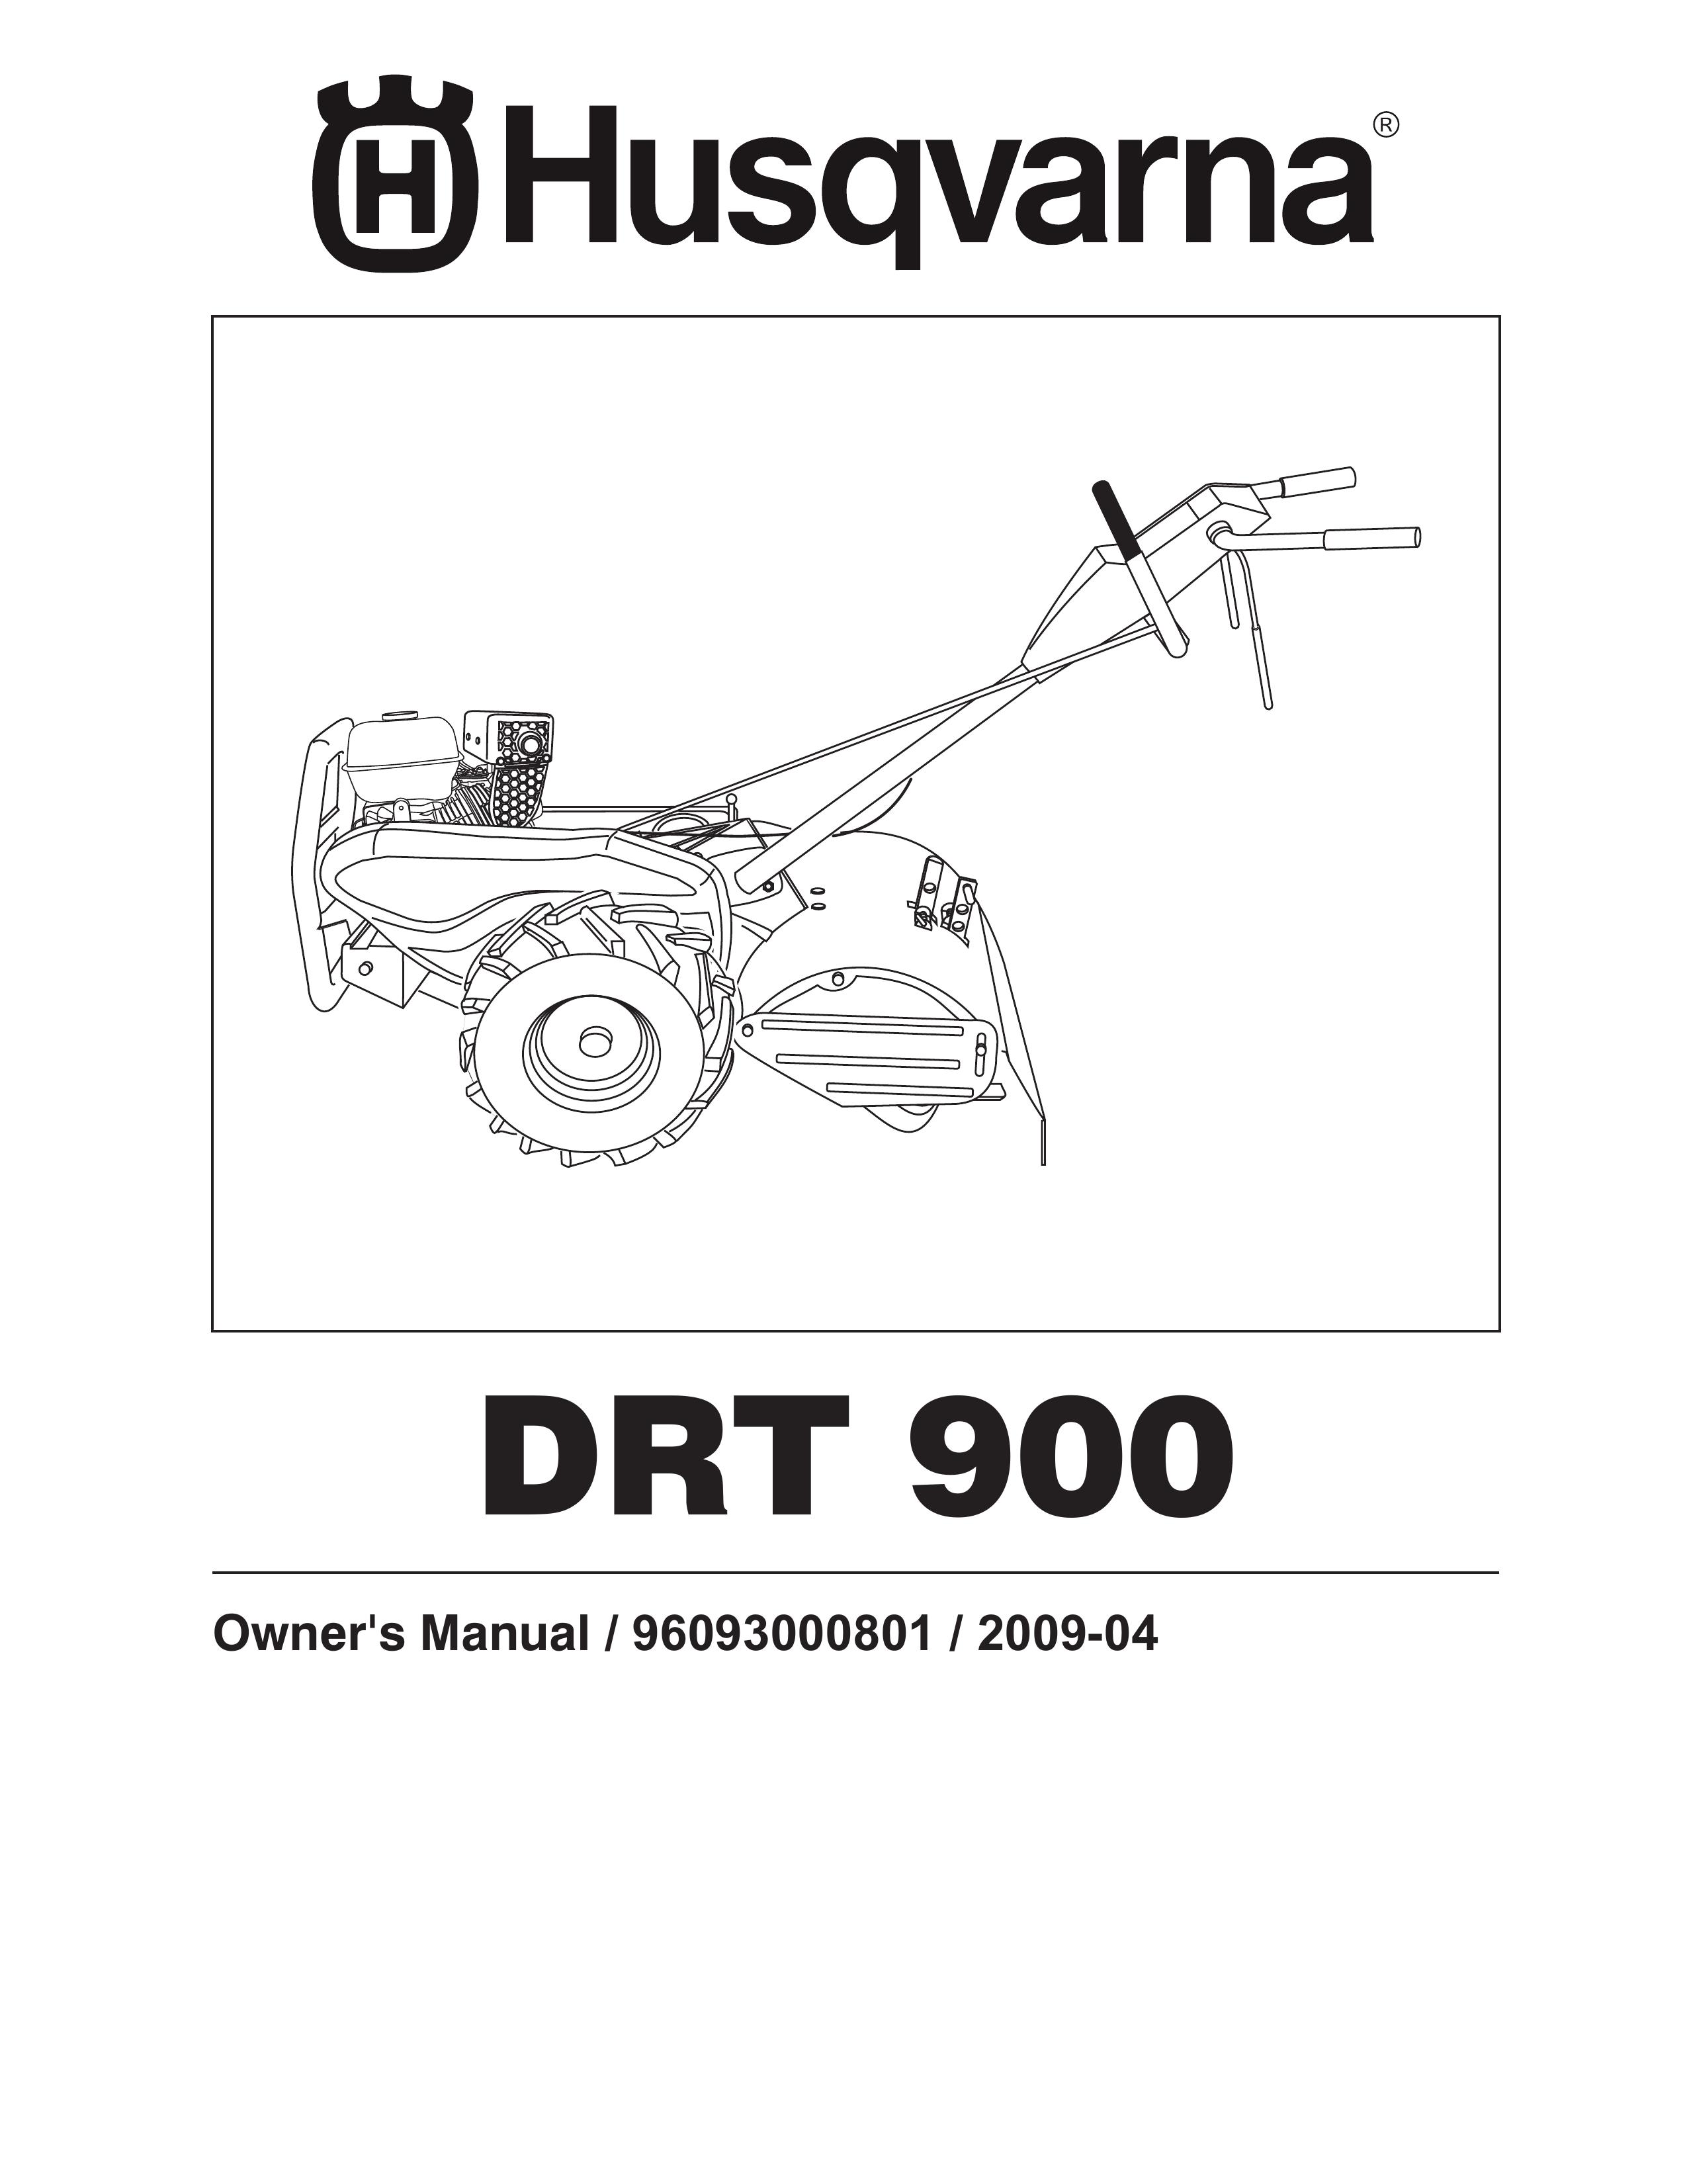 Husqvarna DRT 900 Tiller User Manual